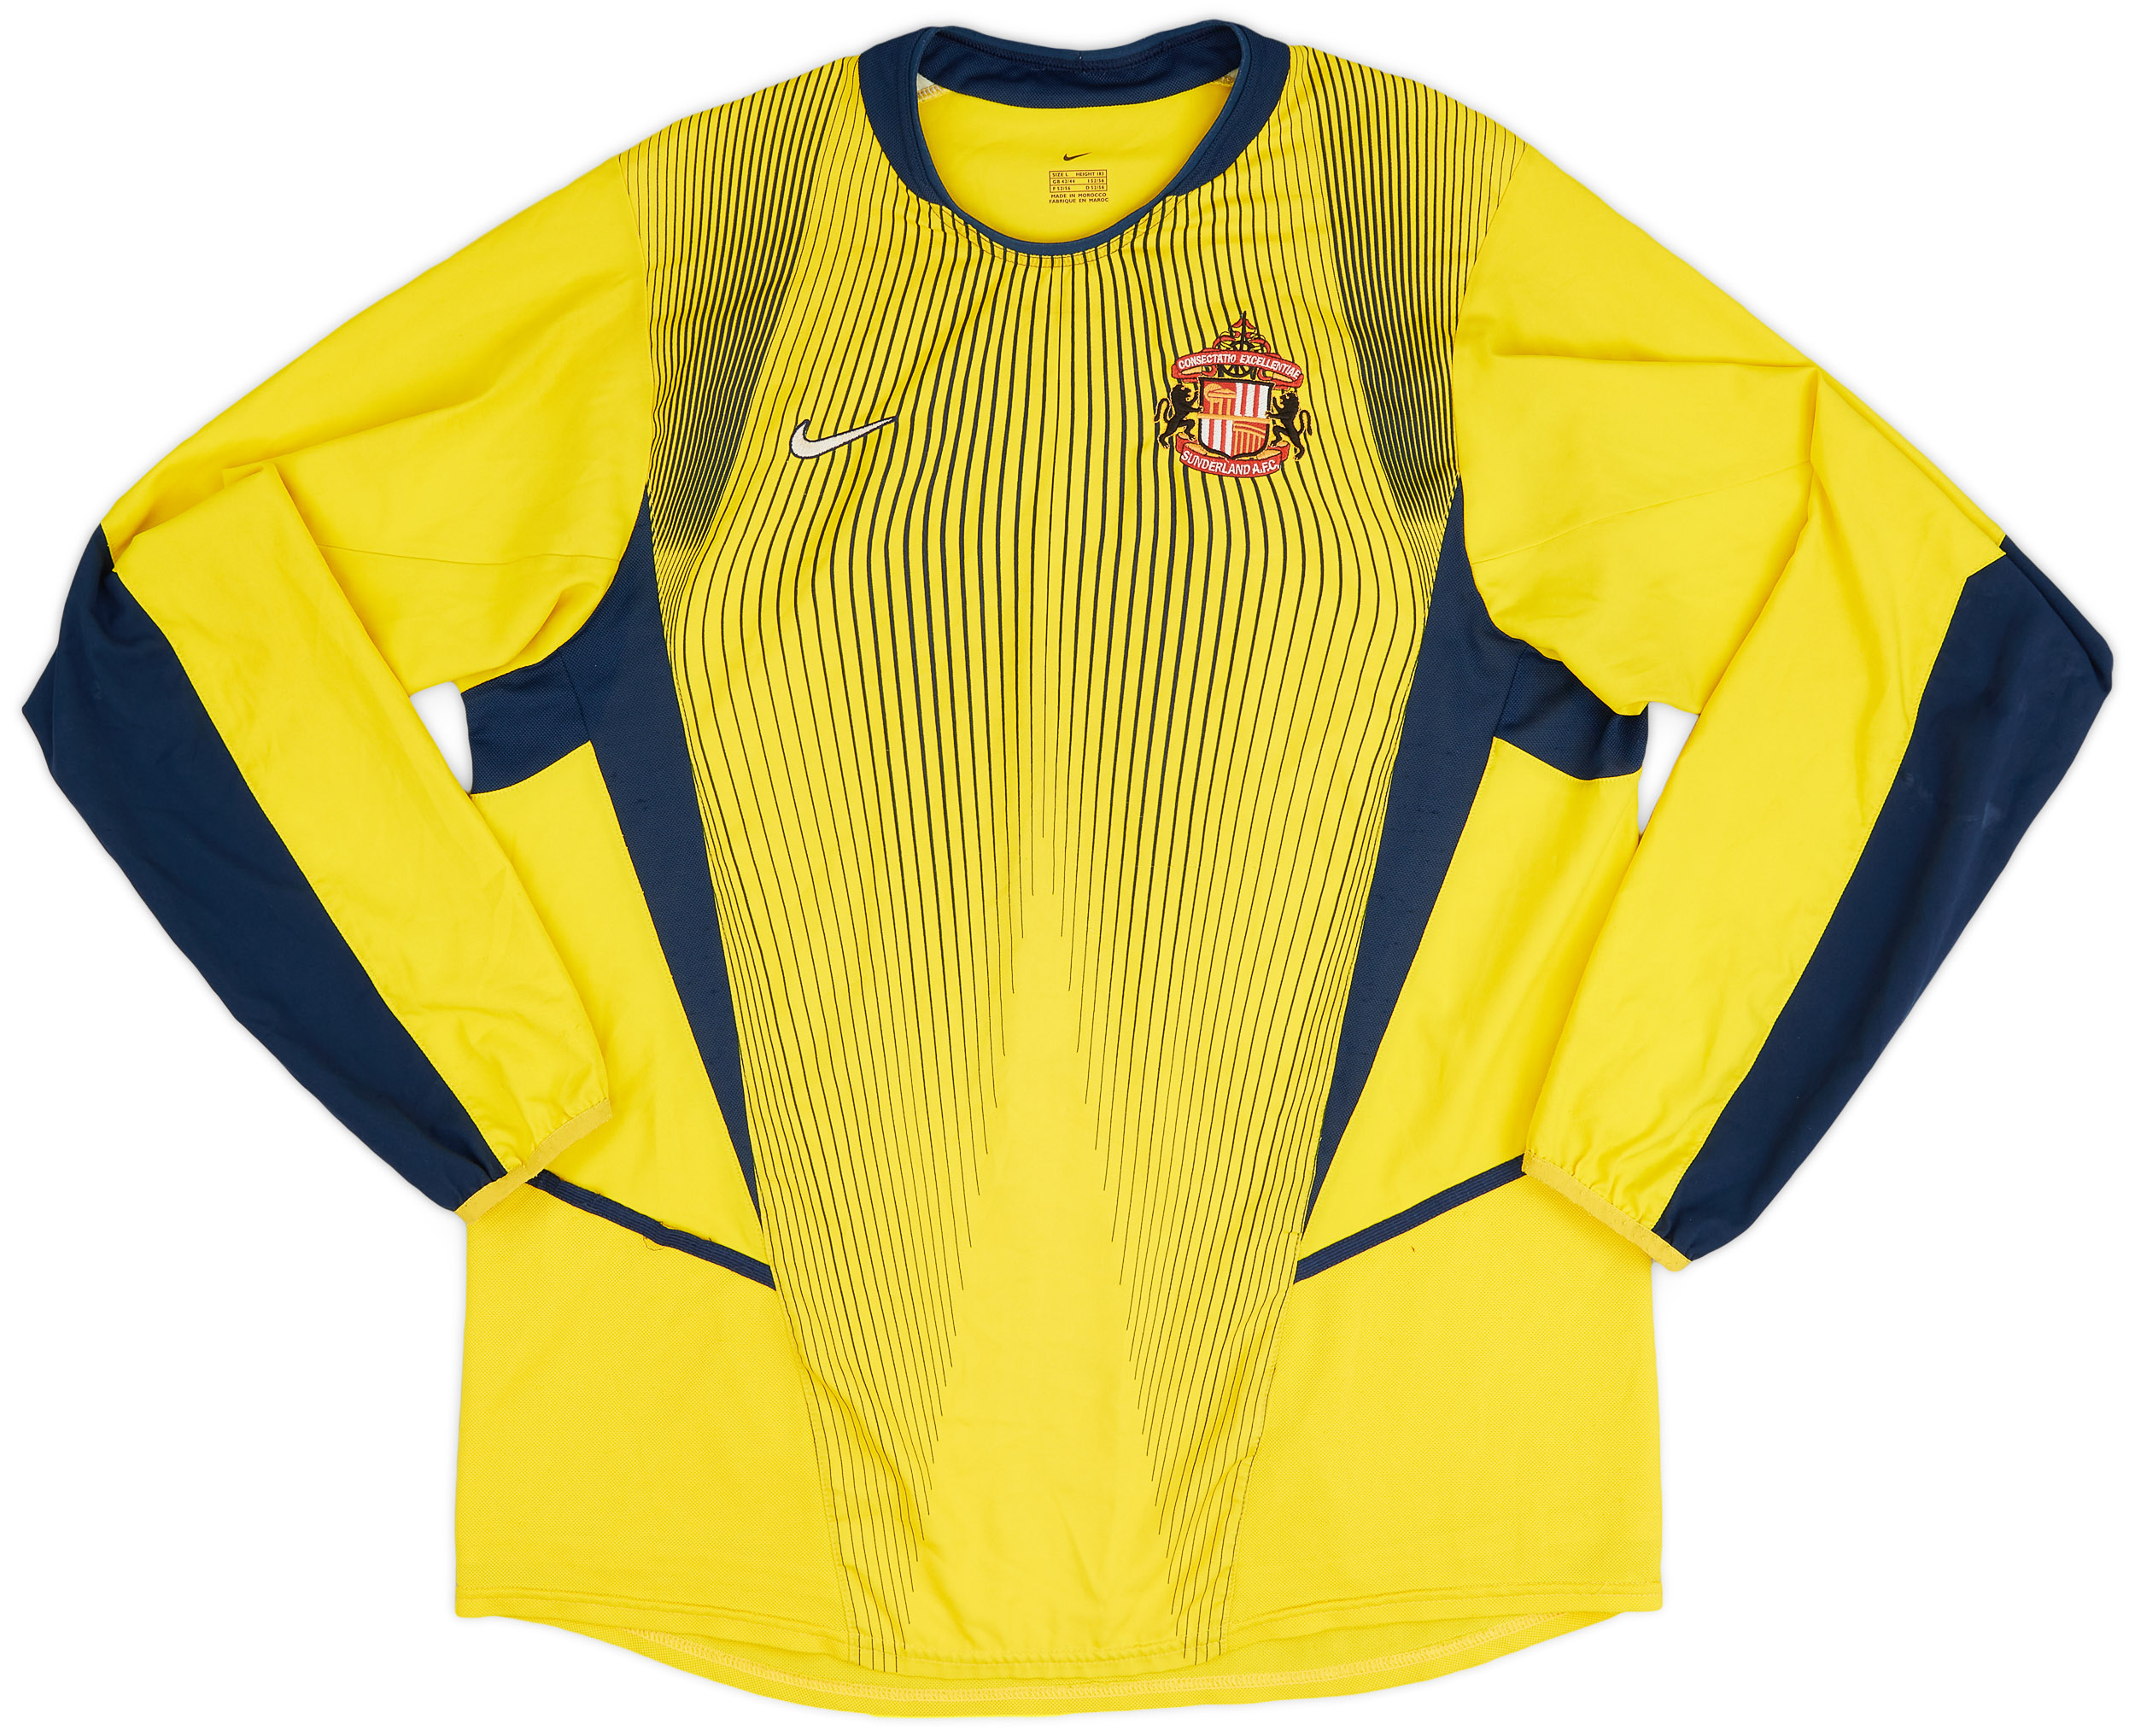 Sunderland  Goalkeeper shirt (Original)